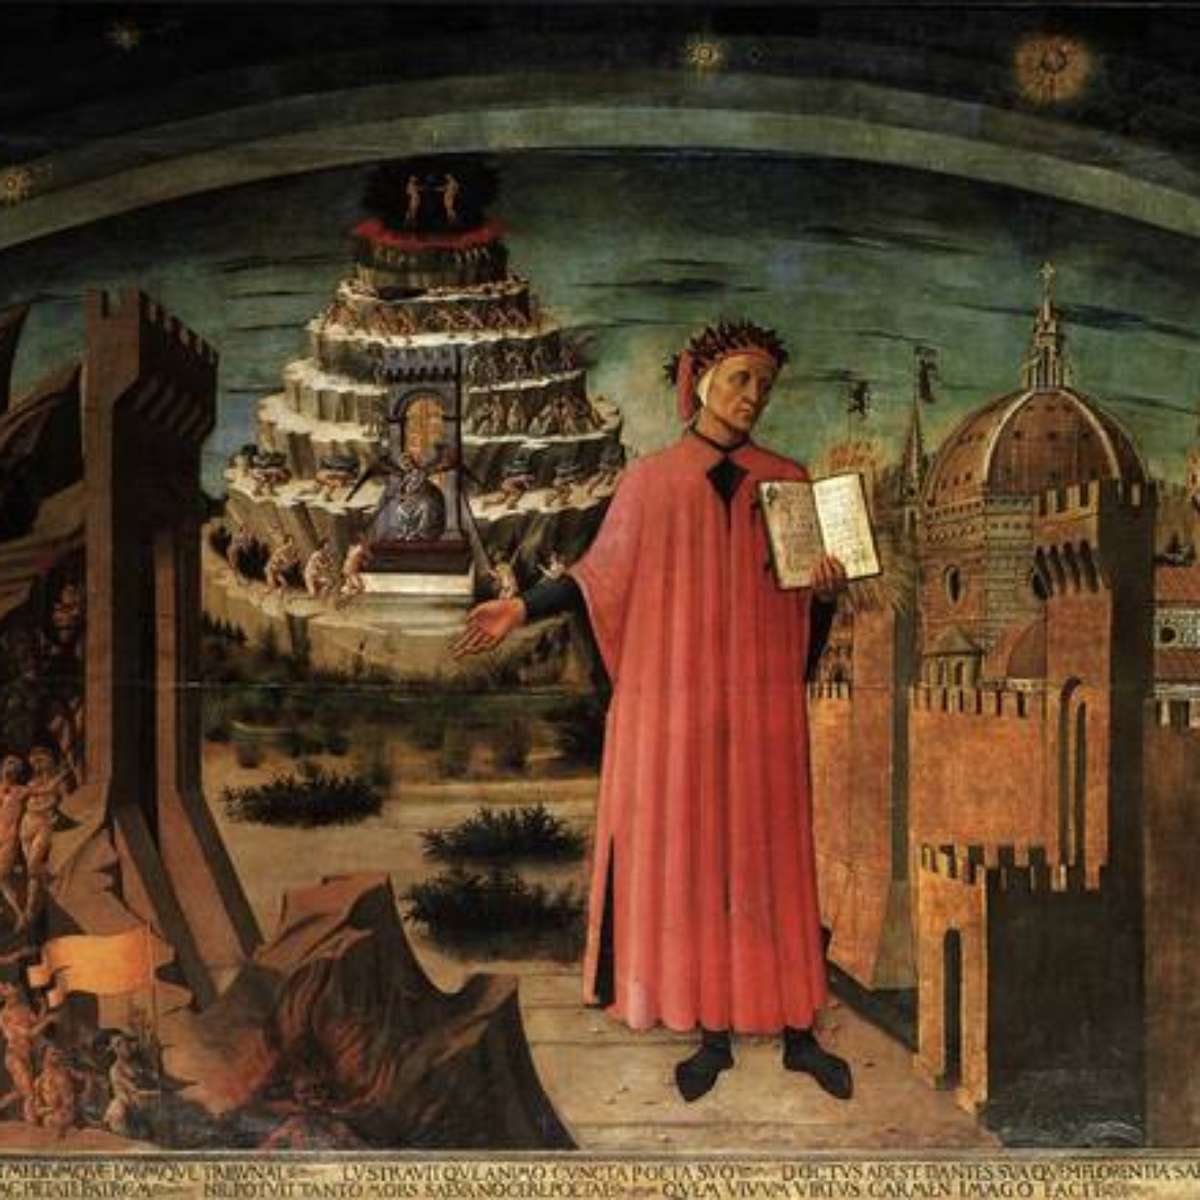 A representação arquitetônica do Inferno de Dante: recursos espaciais,  funcionais e técnicos. by Carolina Mignon - Issuu